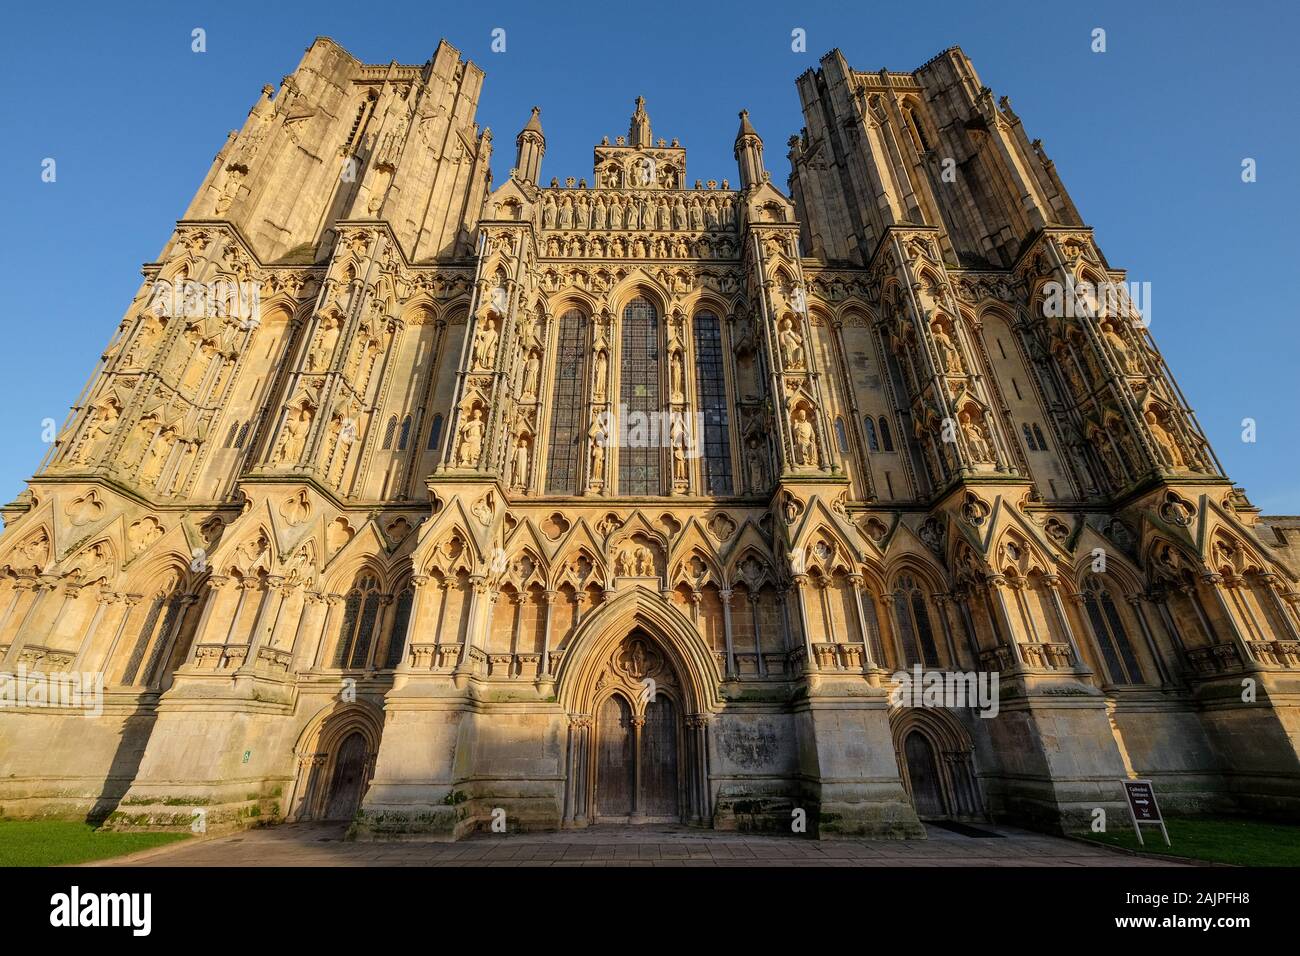 Cattedrale di Wells, pozzi, Somerset, Regno Unito Foto Stock